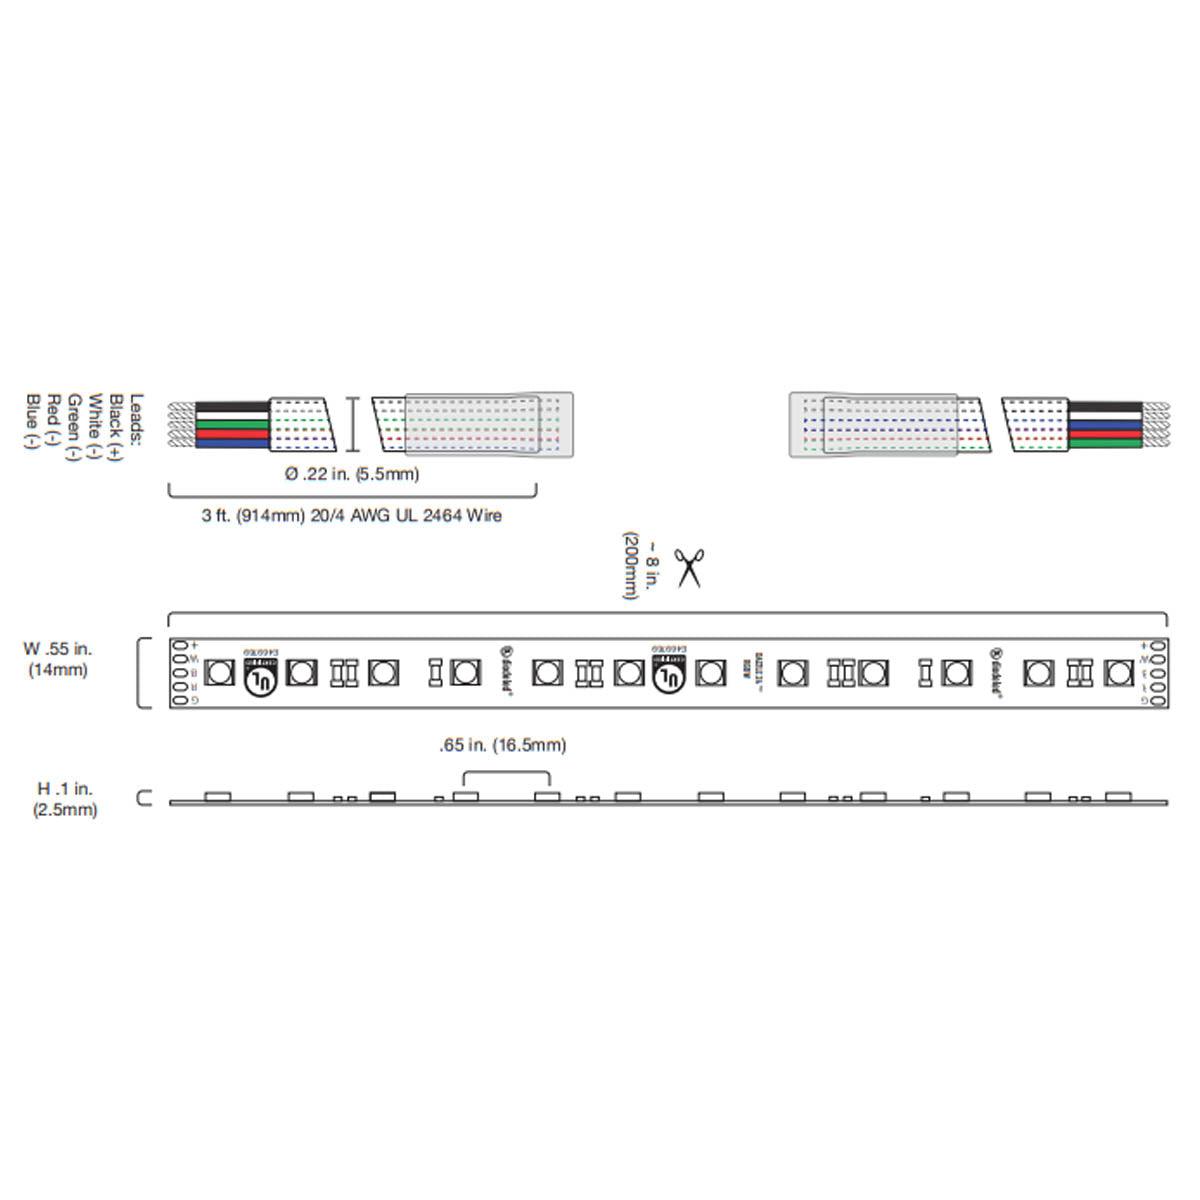 DAZZLE Color Changing LED Strip Light, 20ft Reel, RGB + 3000K, 198 Lumens per Ft, 24V